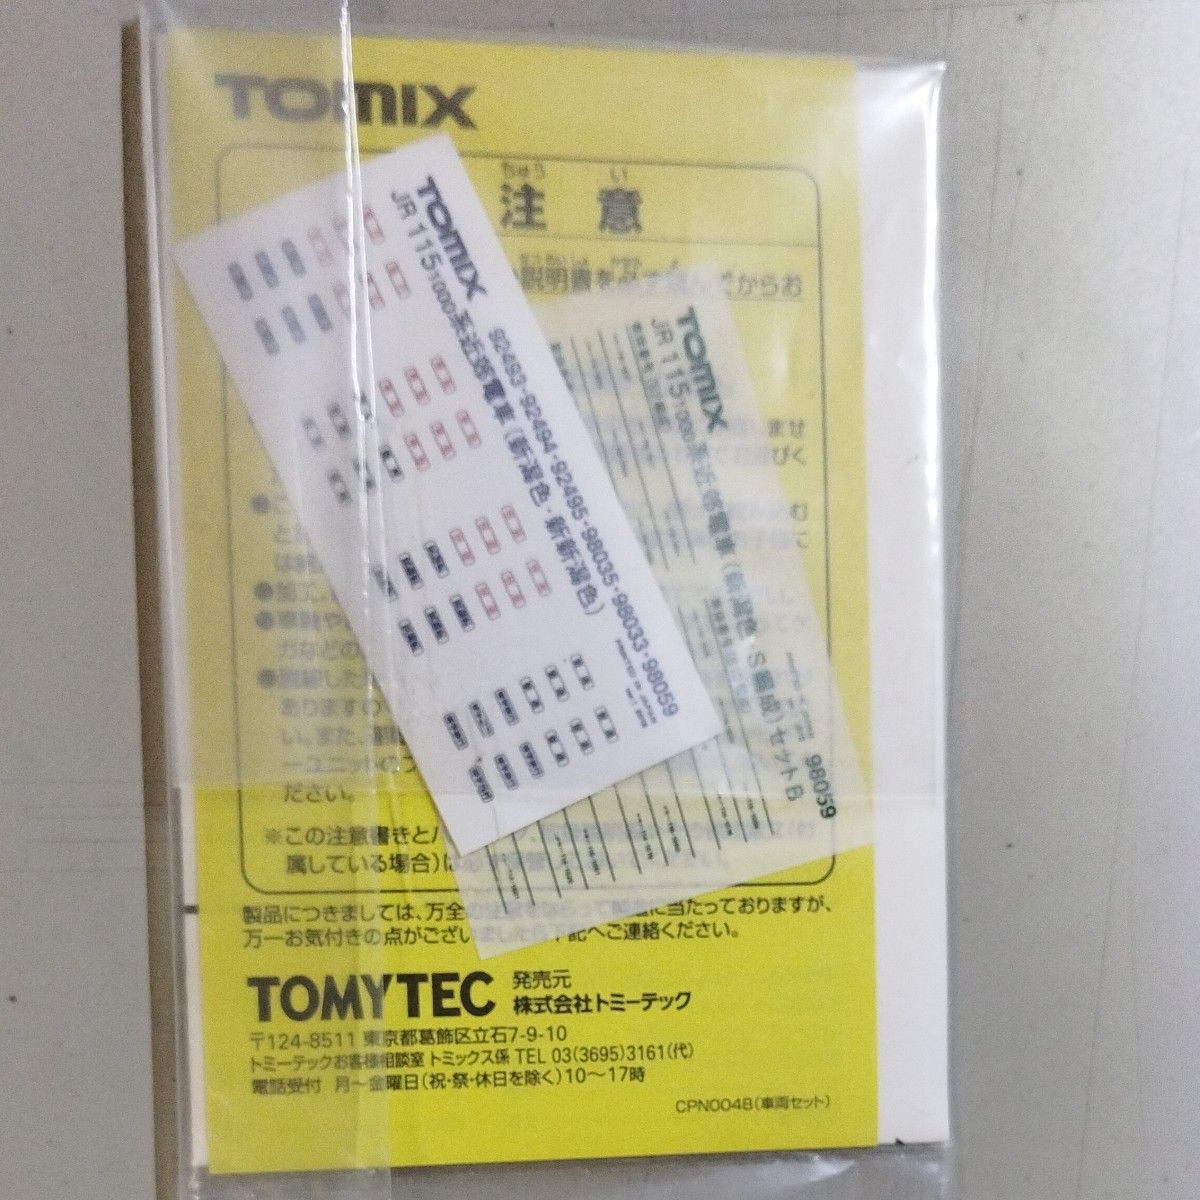 Tomix 98059 JR 115-1000系近郊電車（新潟色・S編成）セットB 　インレタ　ステッカー　説明書のみ